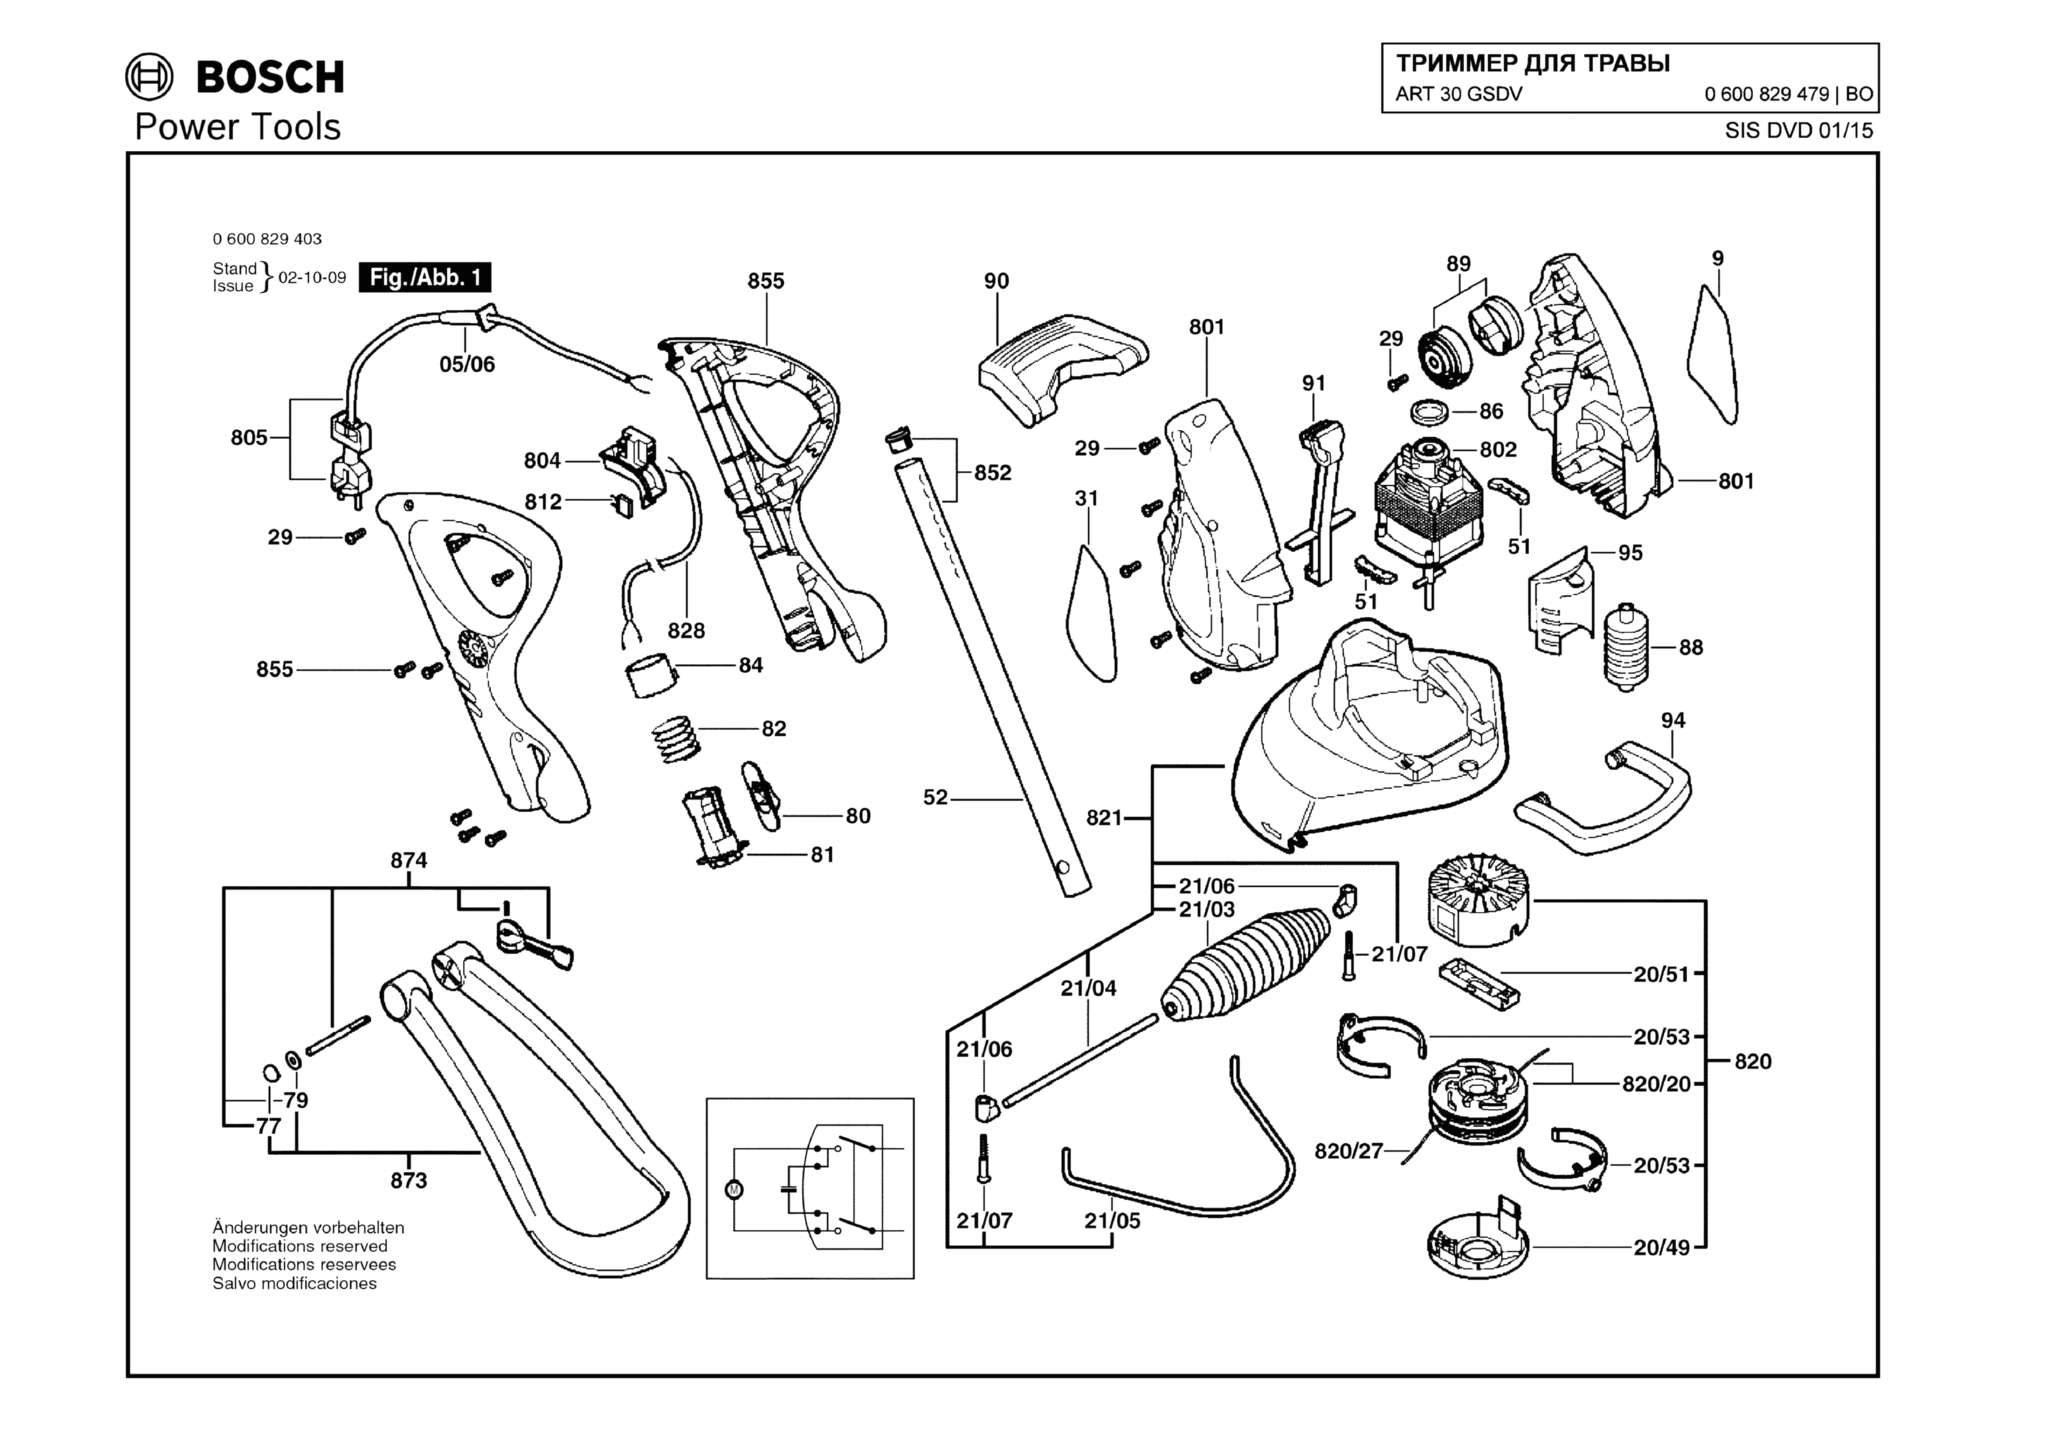 Запчасти, схема и деталировка Bosch ART 30 GSDV (ТИП 0600829479)